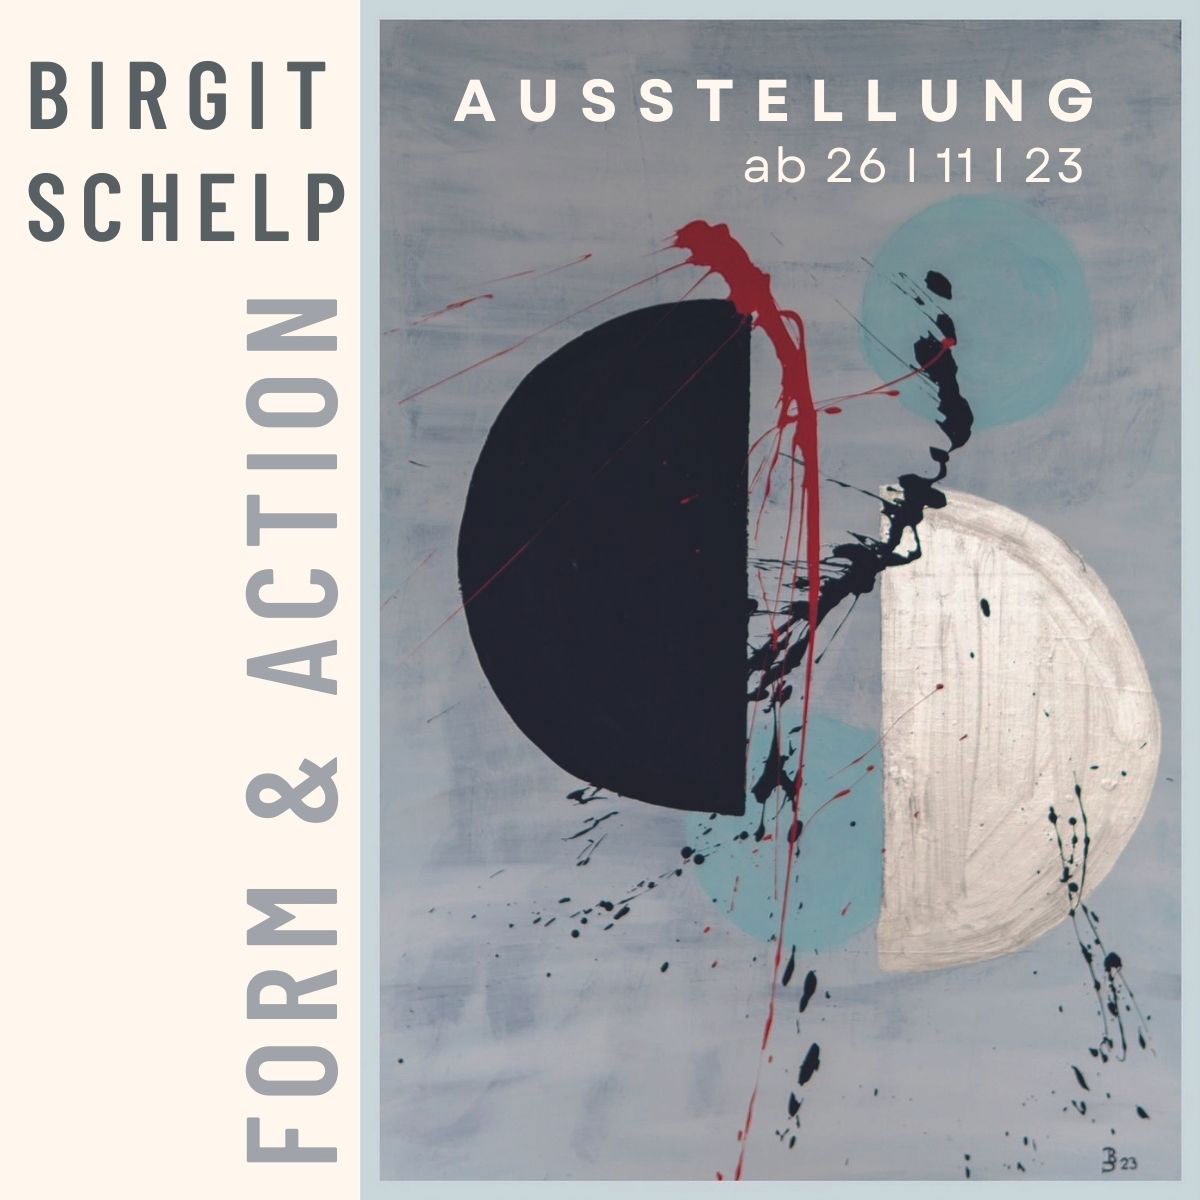 Birgit Schelp Ausstellung Form & Action